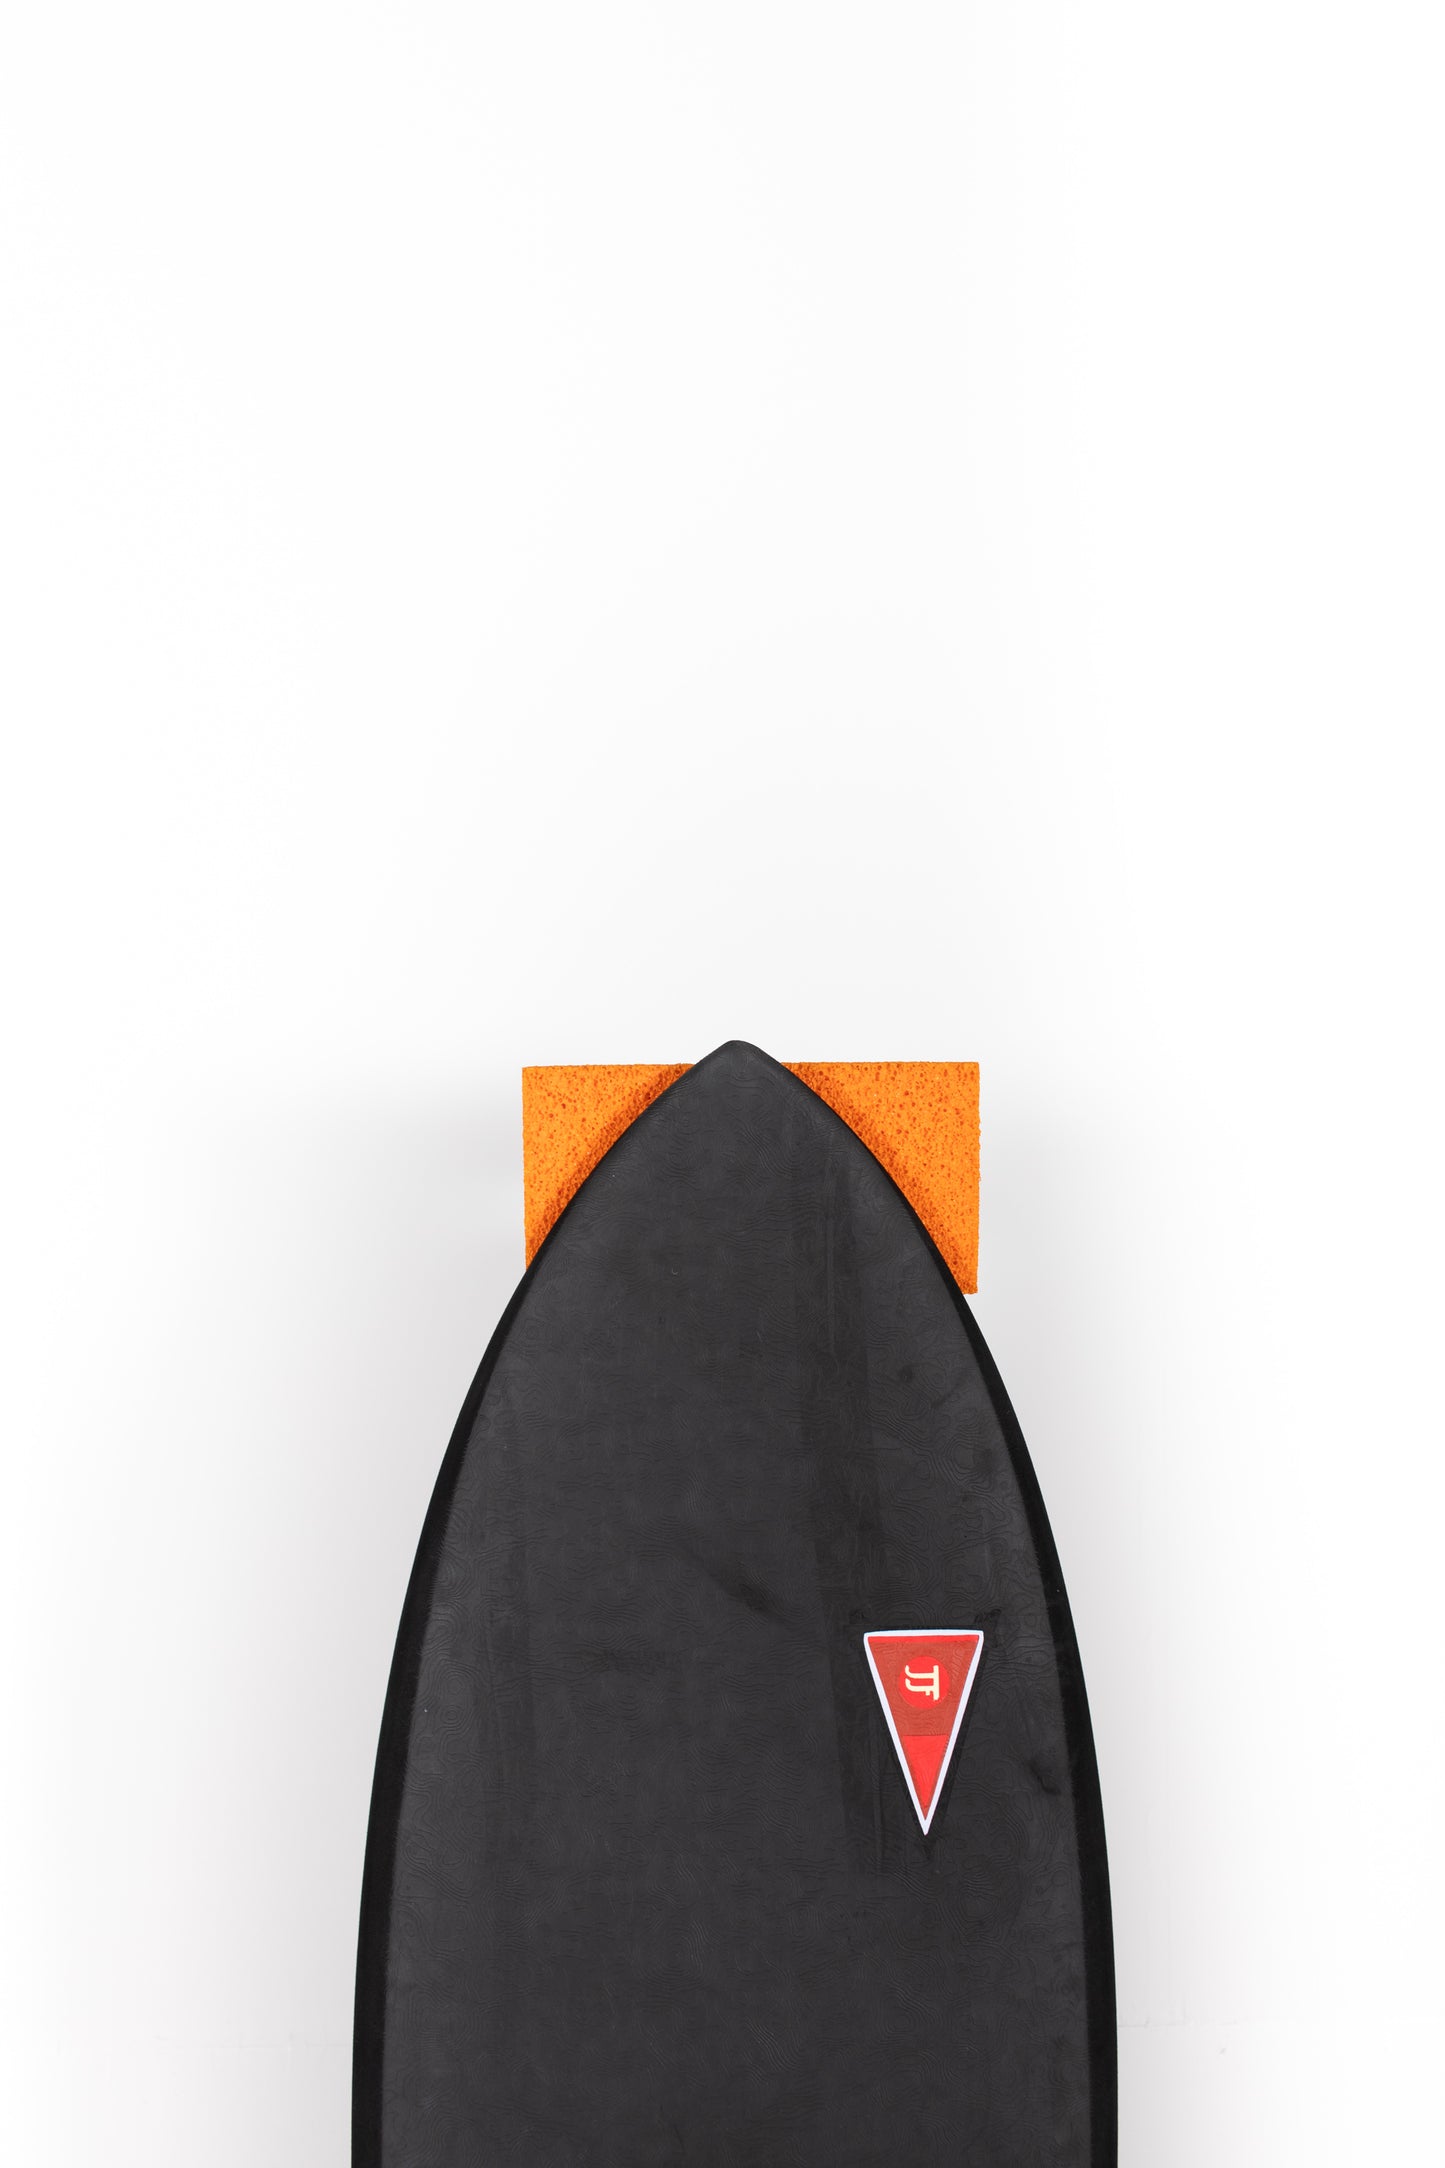 
                  
                    Pukas Surf Shop - JJF SURFBOARD - GREMLIN 4.6 BLACK
                  
                